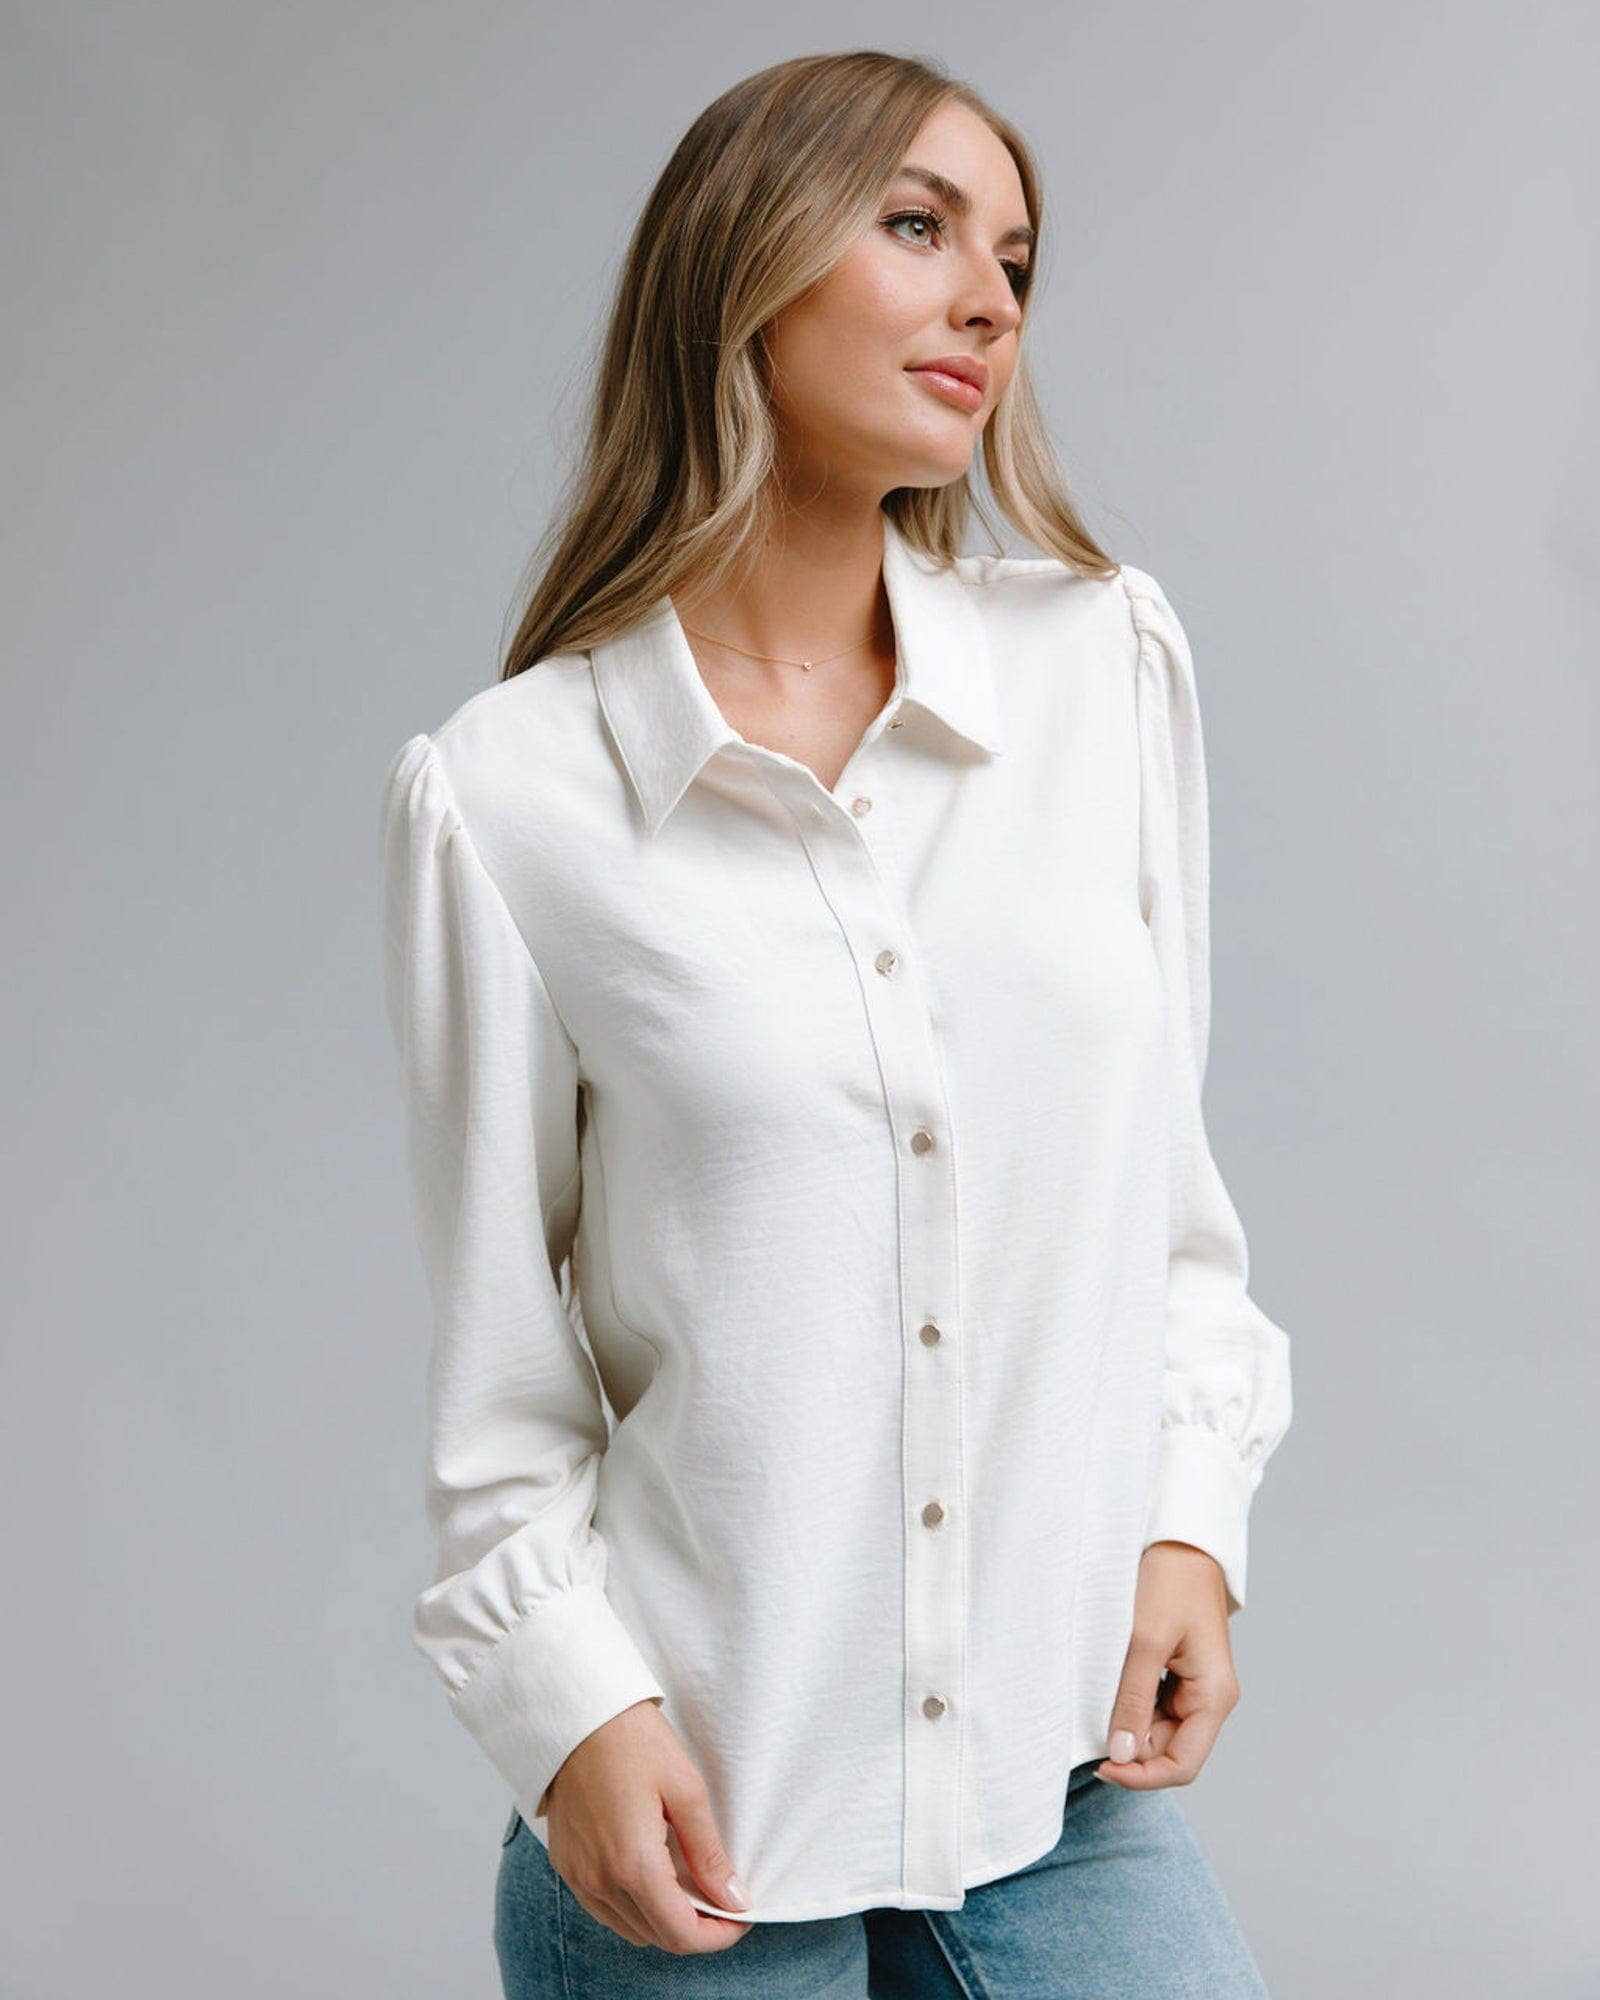 Jovi Blouse White gold buttons long sleeve blouse timeless elegant Jovi Blouse: L / Gardenia - Jennifer Kay Design